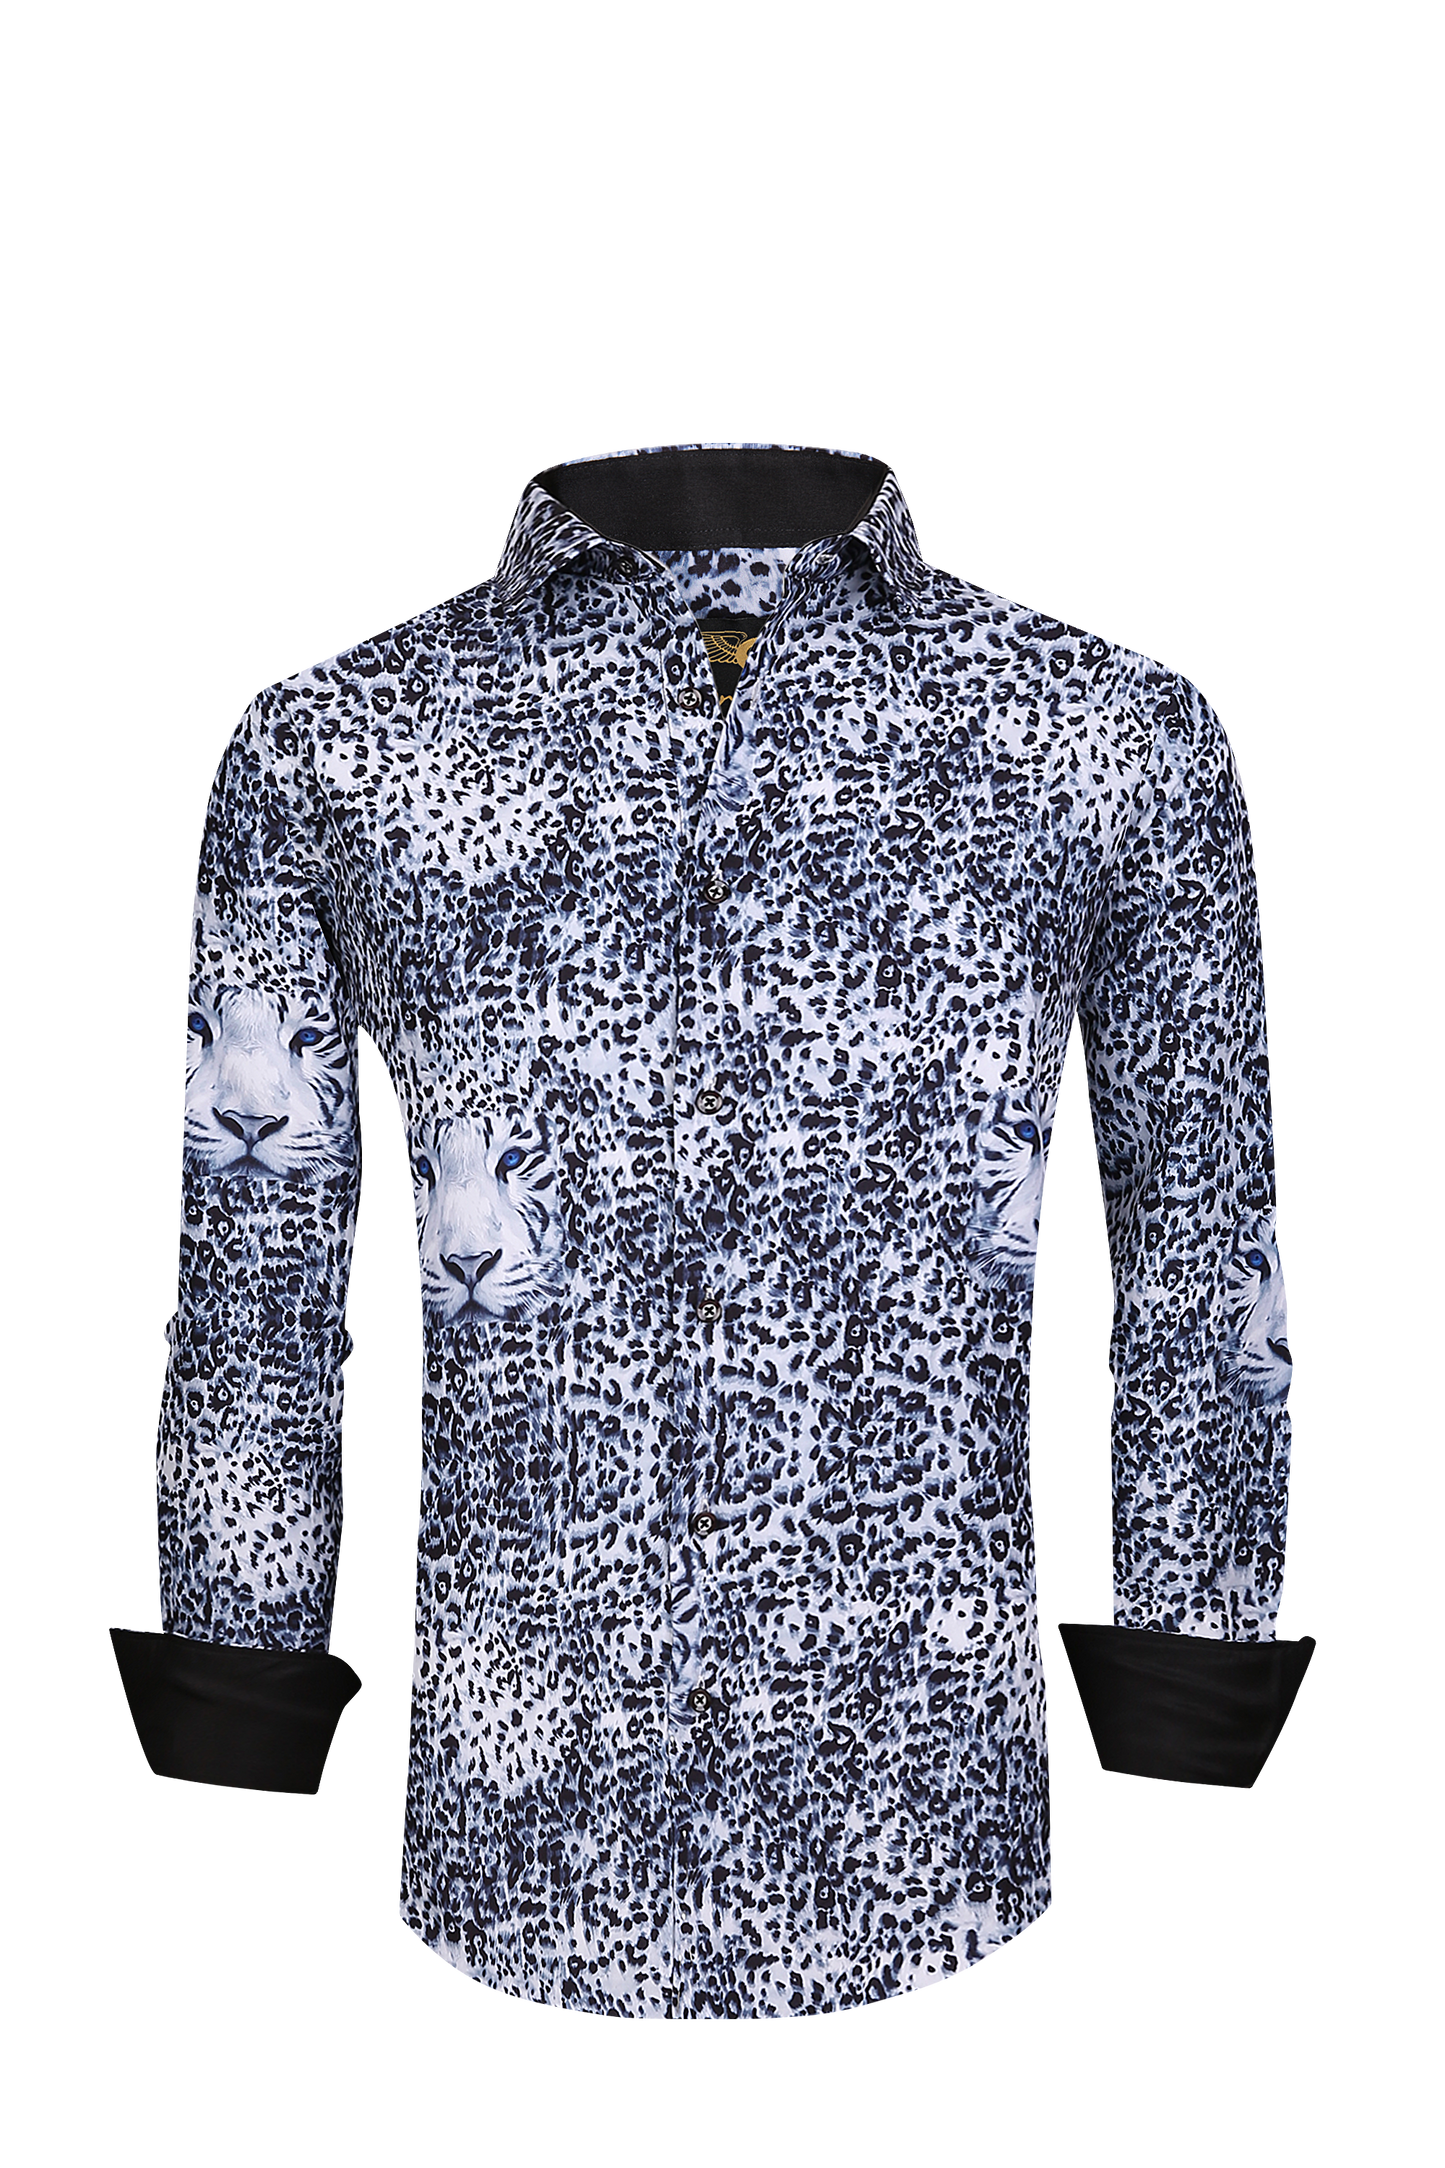 Men PREMIERE Long Sleeve Button Up Dress Shirt White Black Snow Leopard